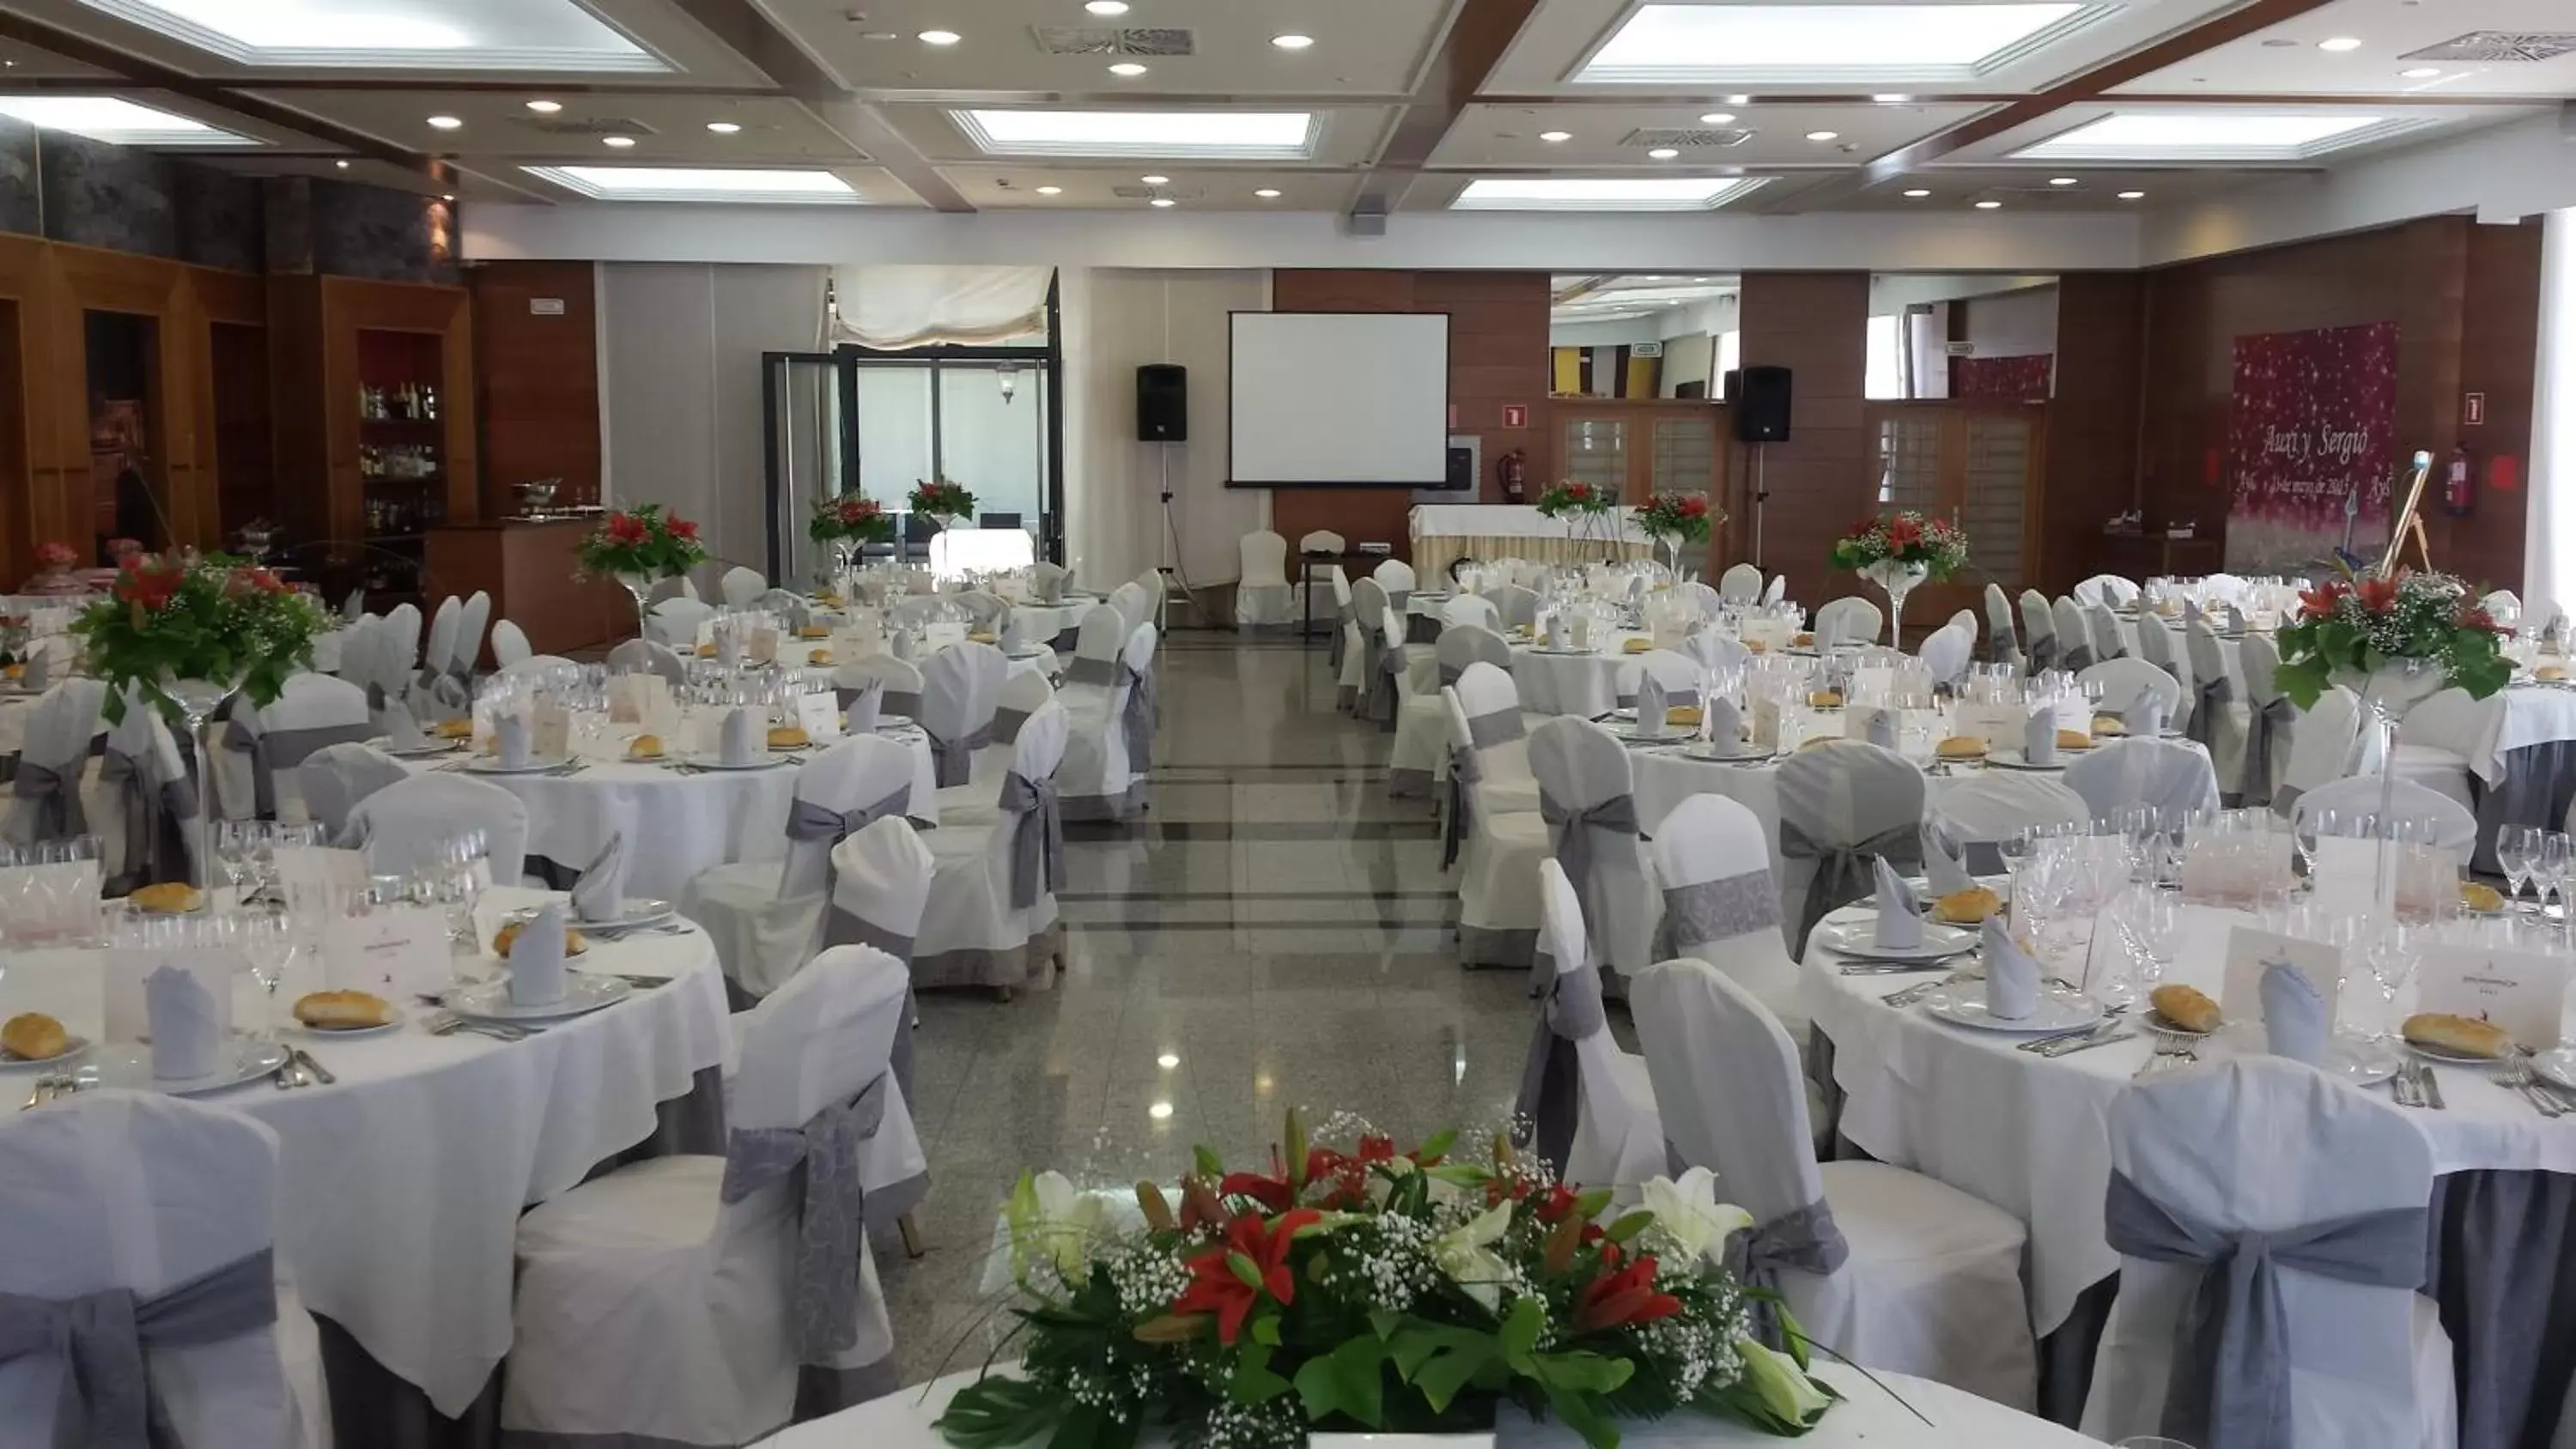 Food and drinks, Banquet Facilities in Hotel Bardo Recoletos Coco